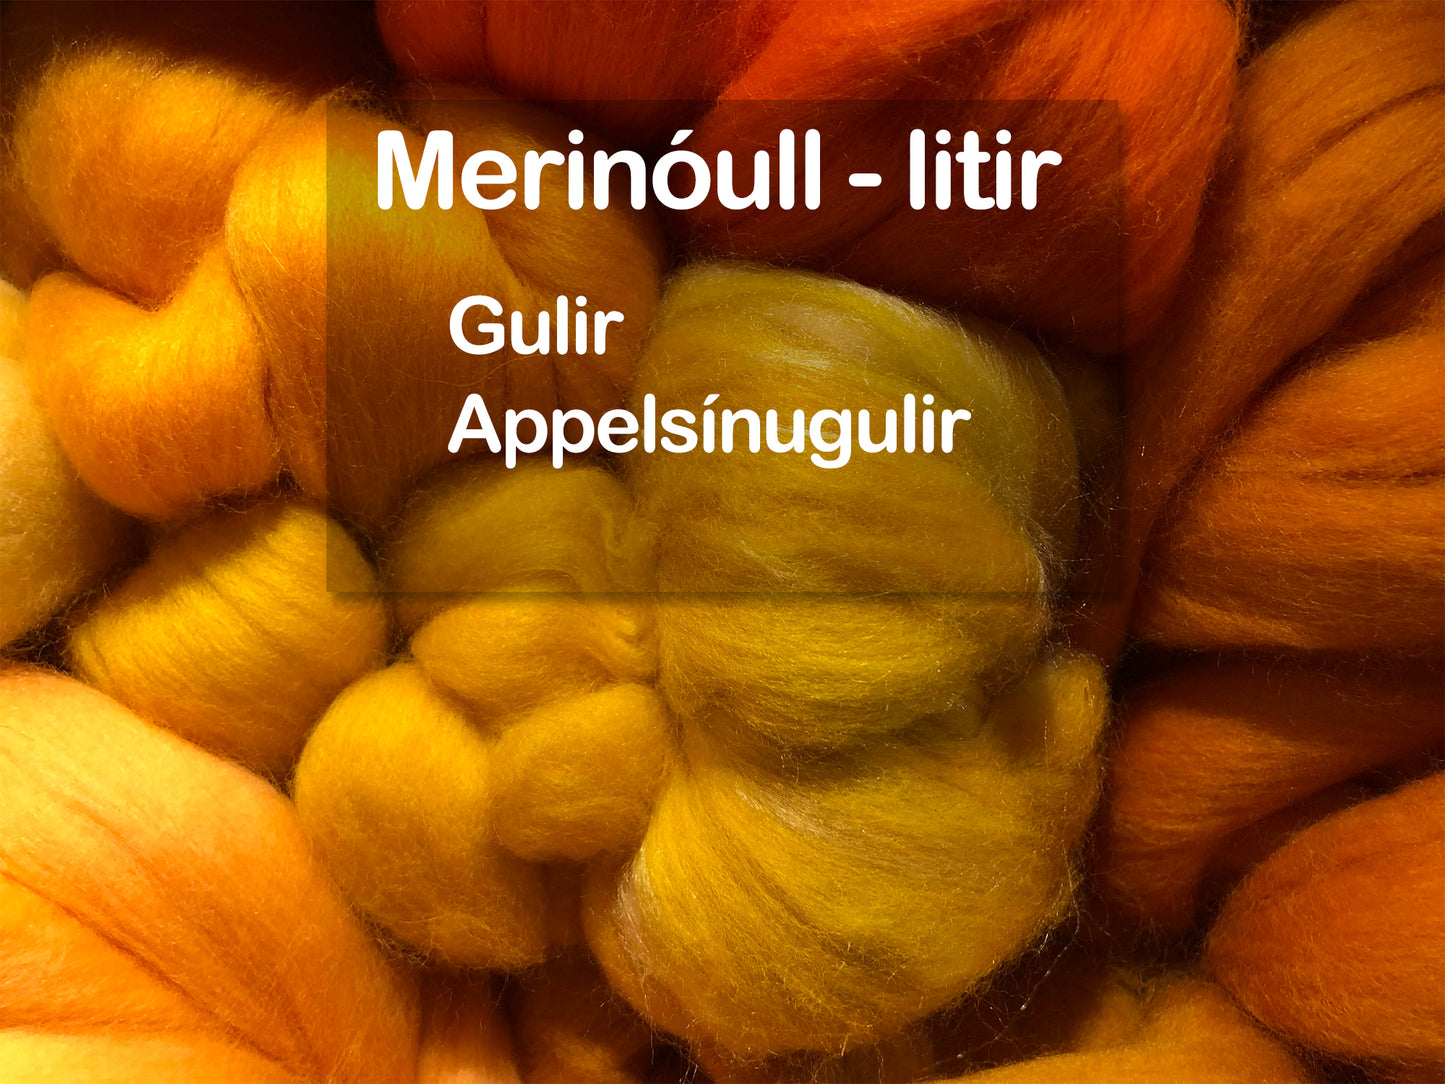 Merinóull - hvít, gulir og appelsínugulir litir